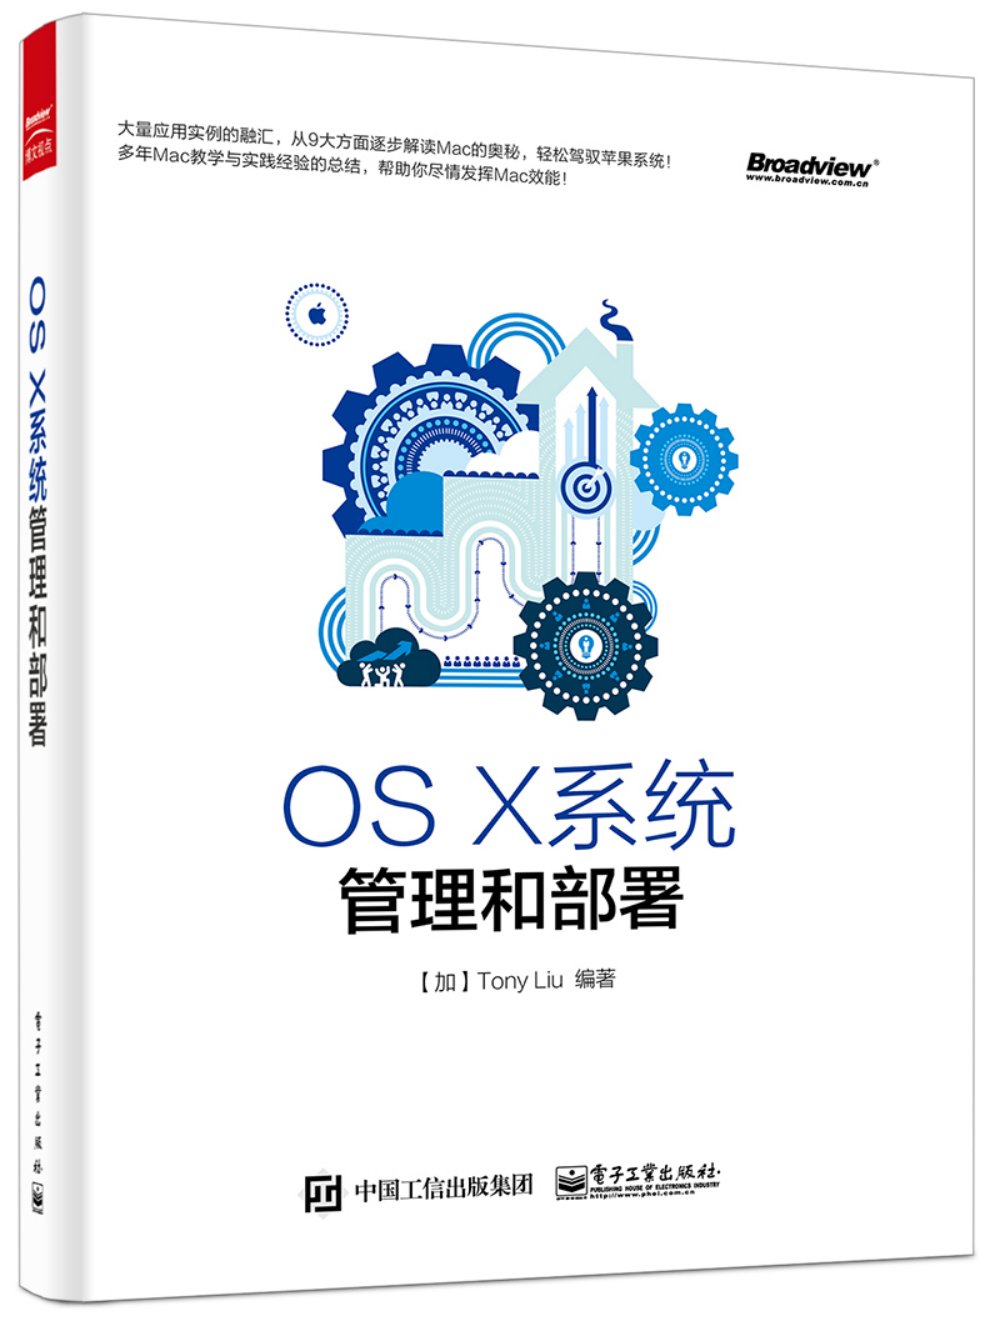 OS X系統管理和部署